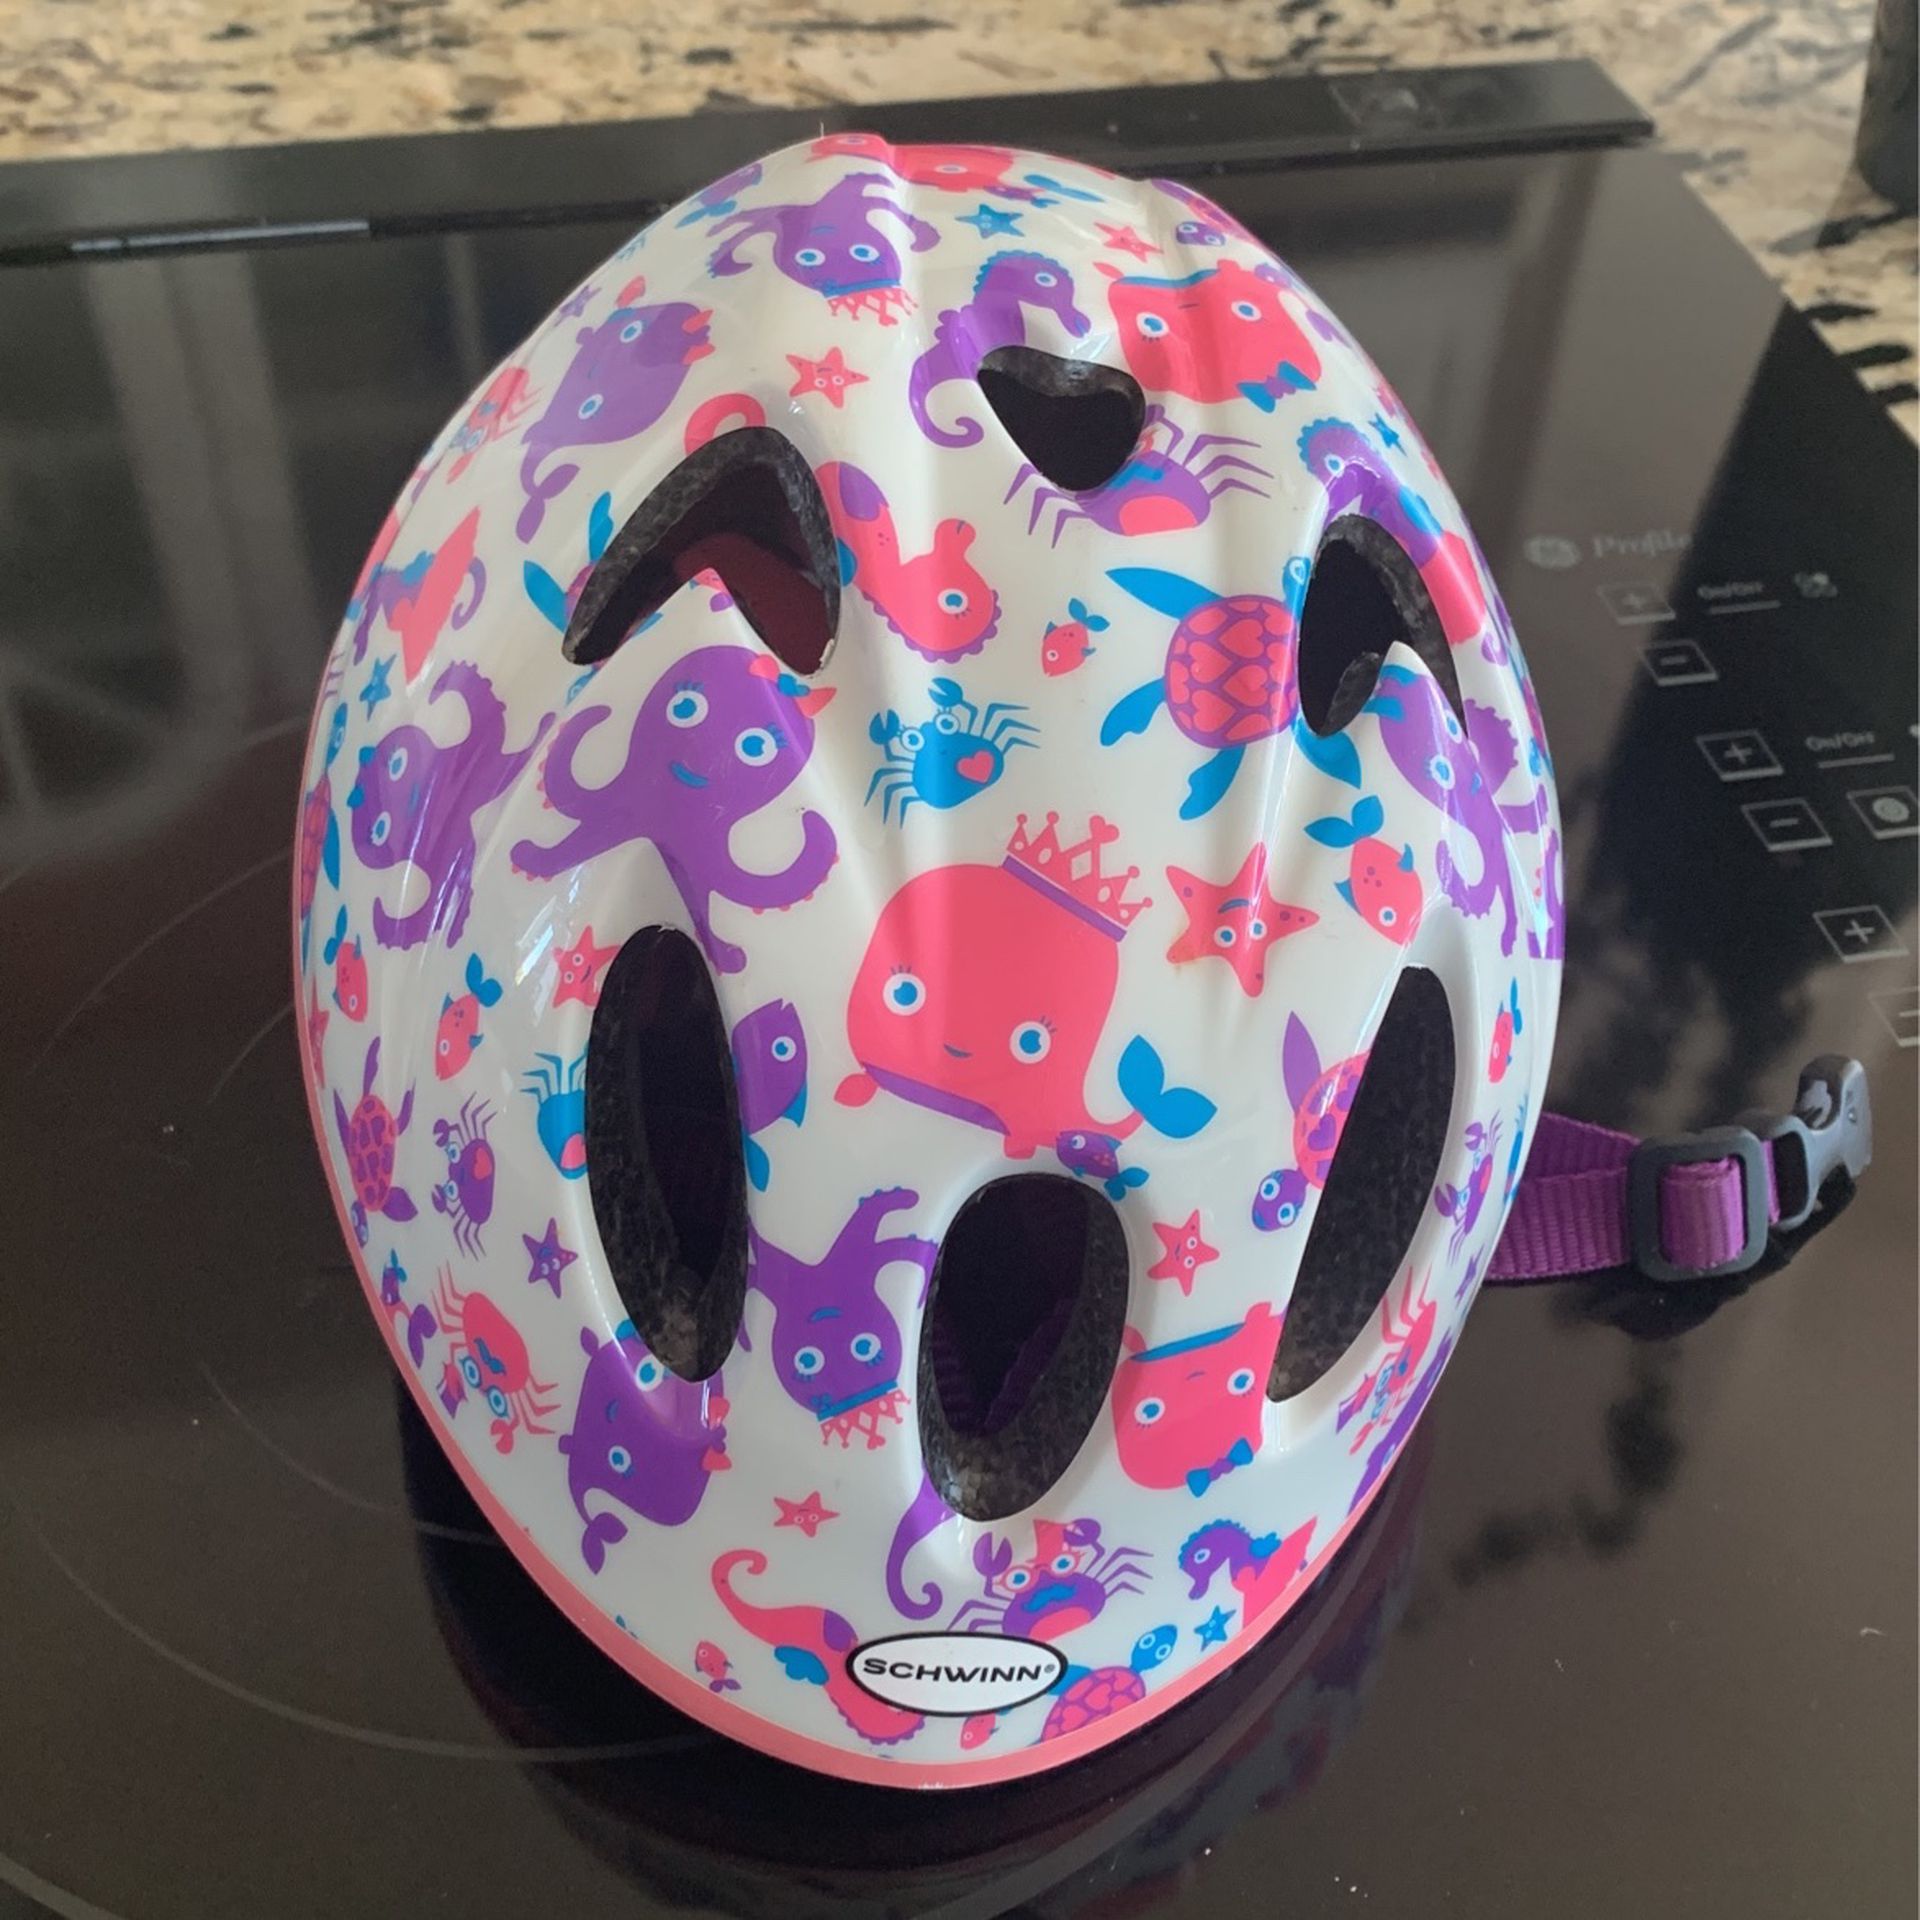 Schwinn Toddler Bicycle Helmet